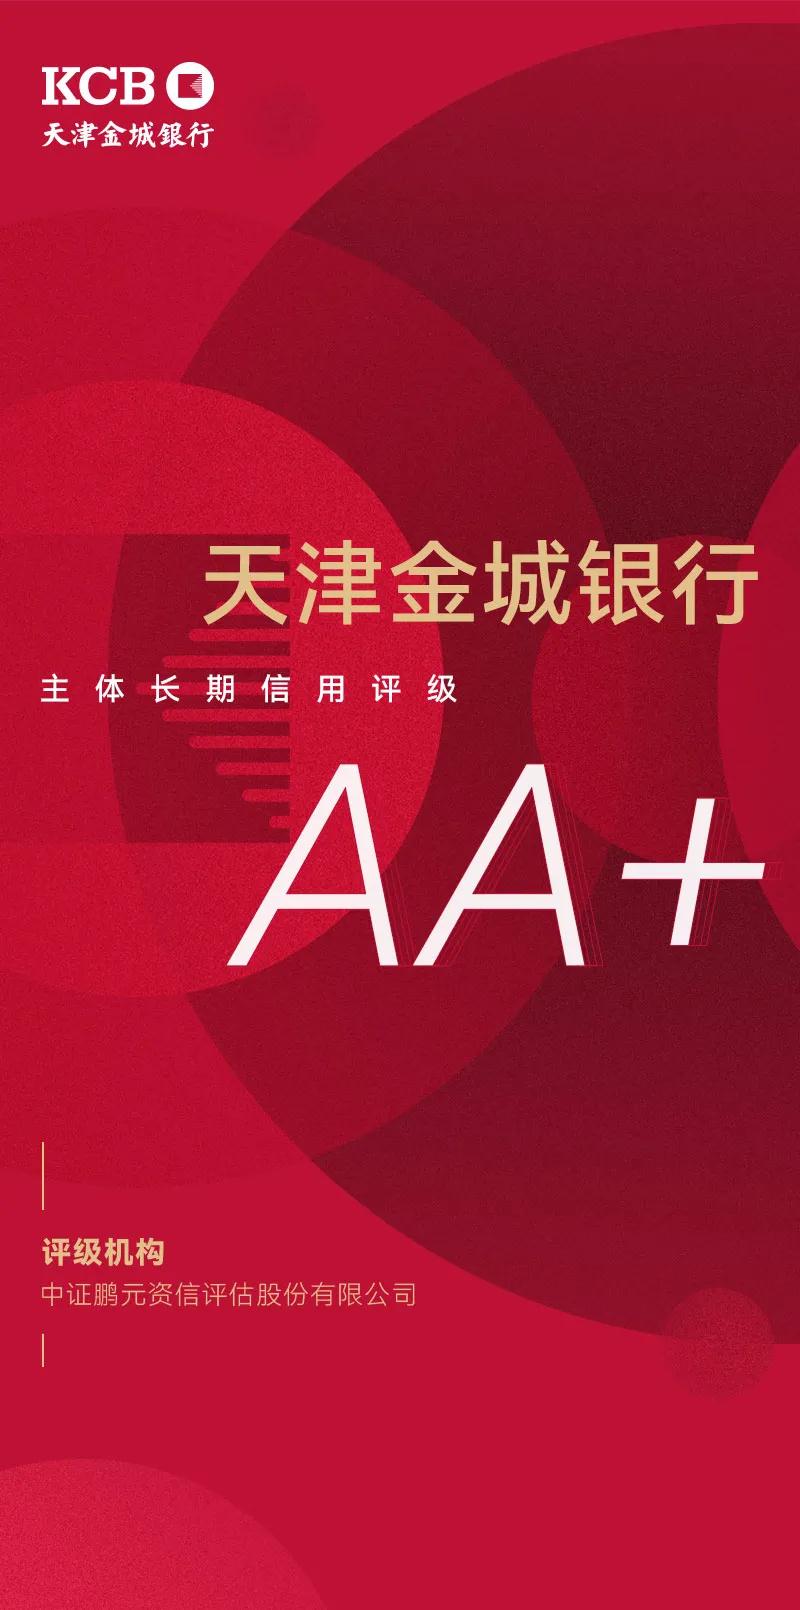 数字化转型受行业认可 天津金城银行获AA+主体信用评级